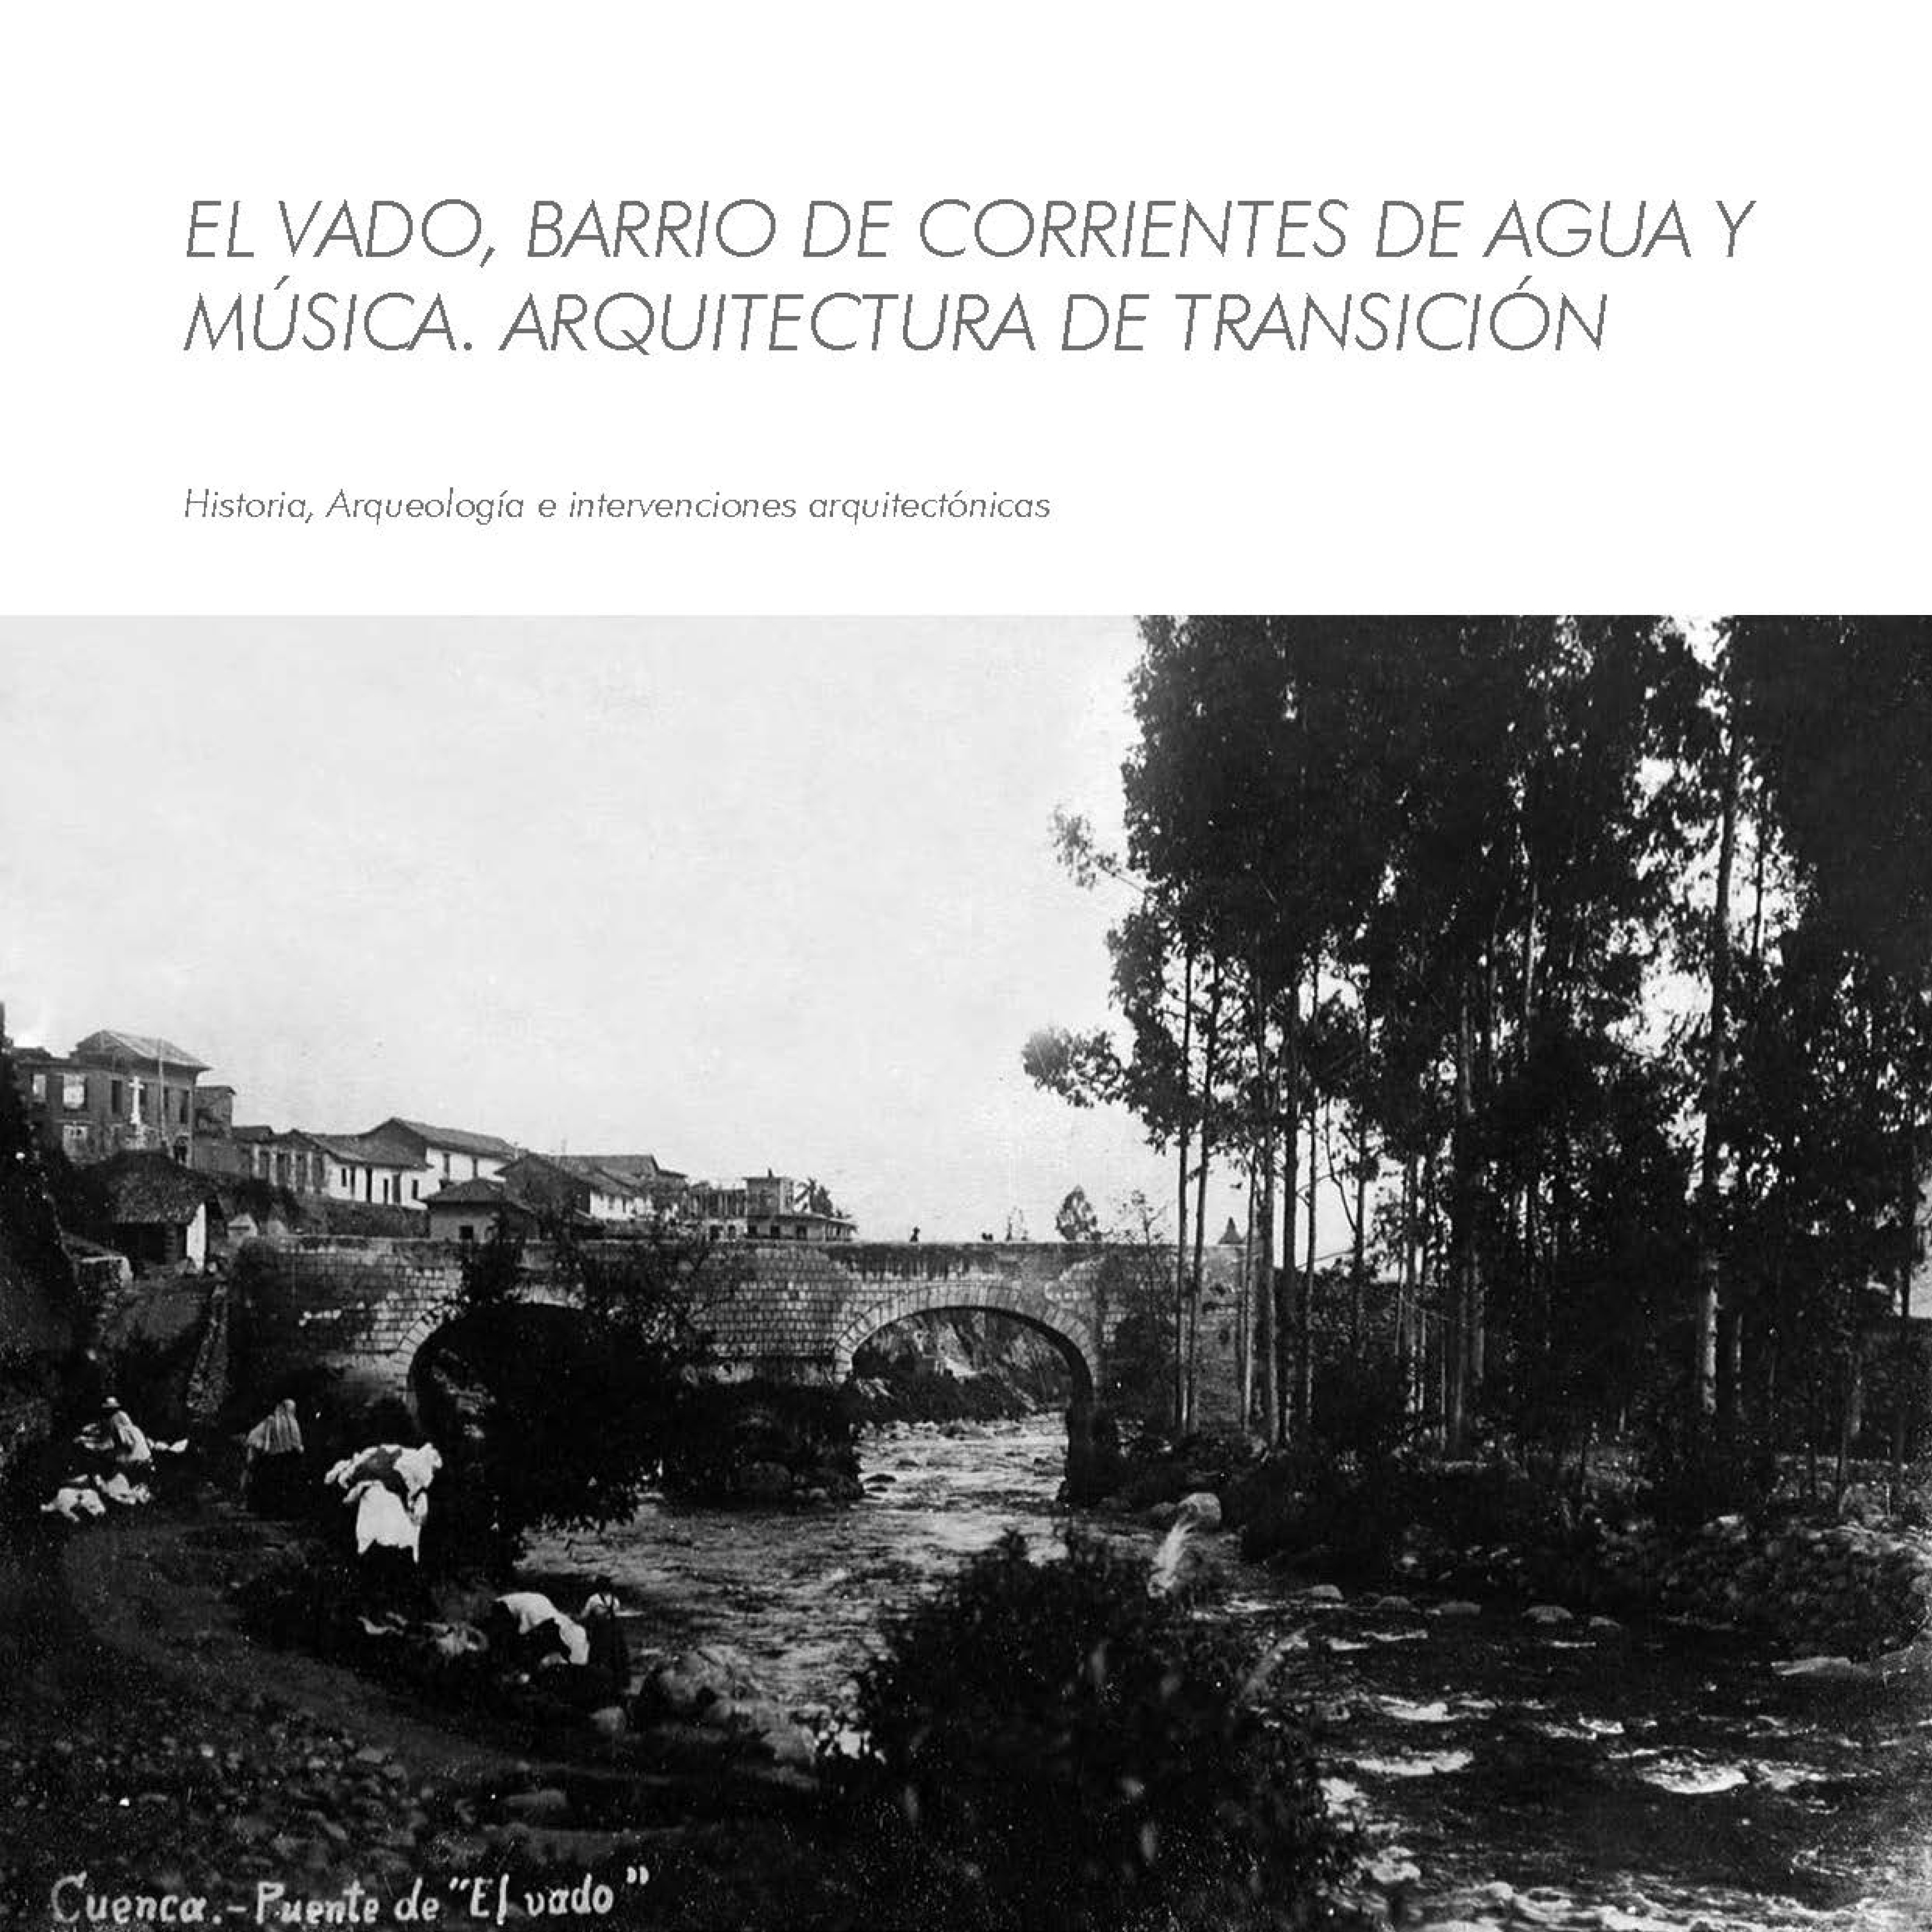 EL VADO, BARRIO DE CORRIENTES DE AGUA Y MÚSICA. ARQUITECTURA DE TRANSICIÓN: HISTORIA ARQUEOLOGÍA E INTERVENCIONES ARQUITECTÓNICAS.